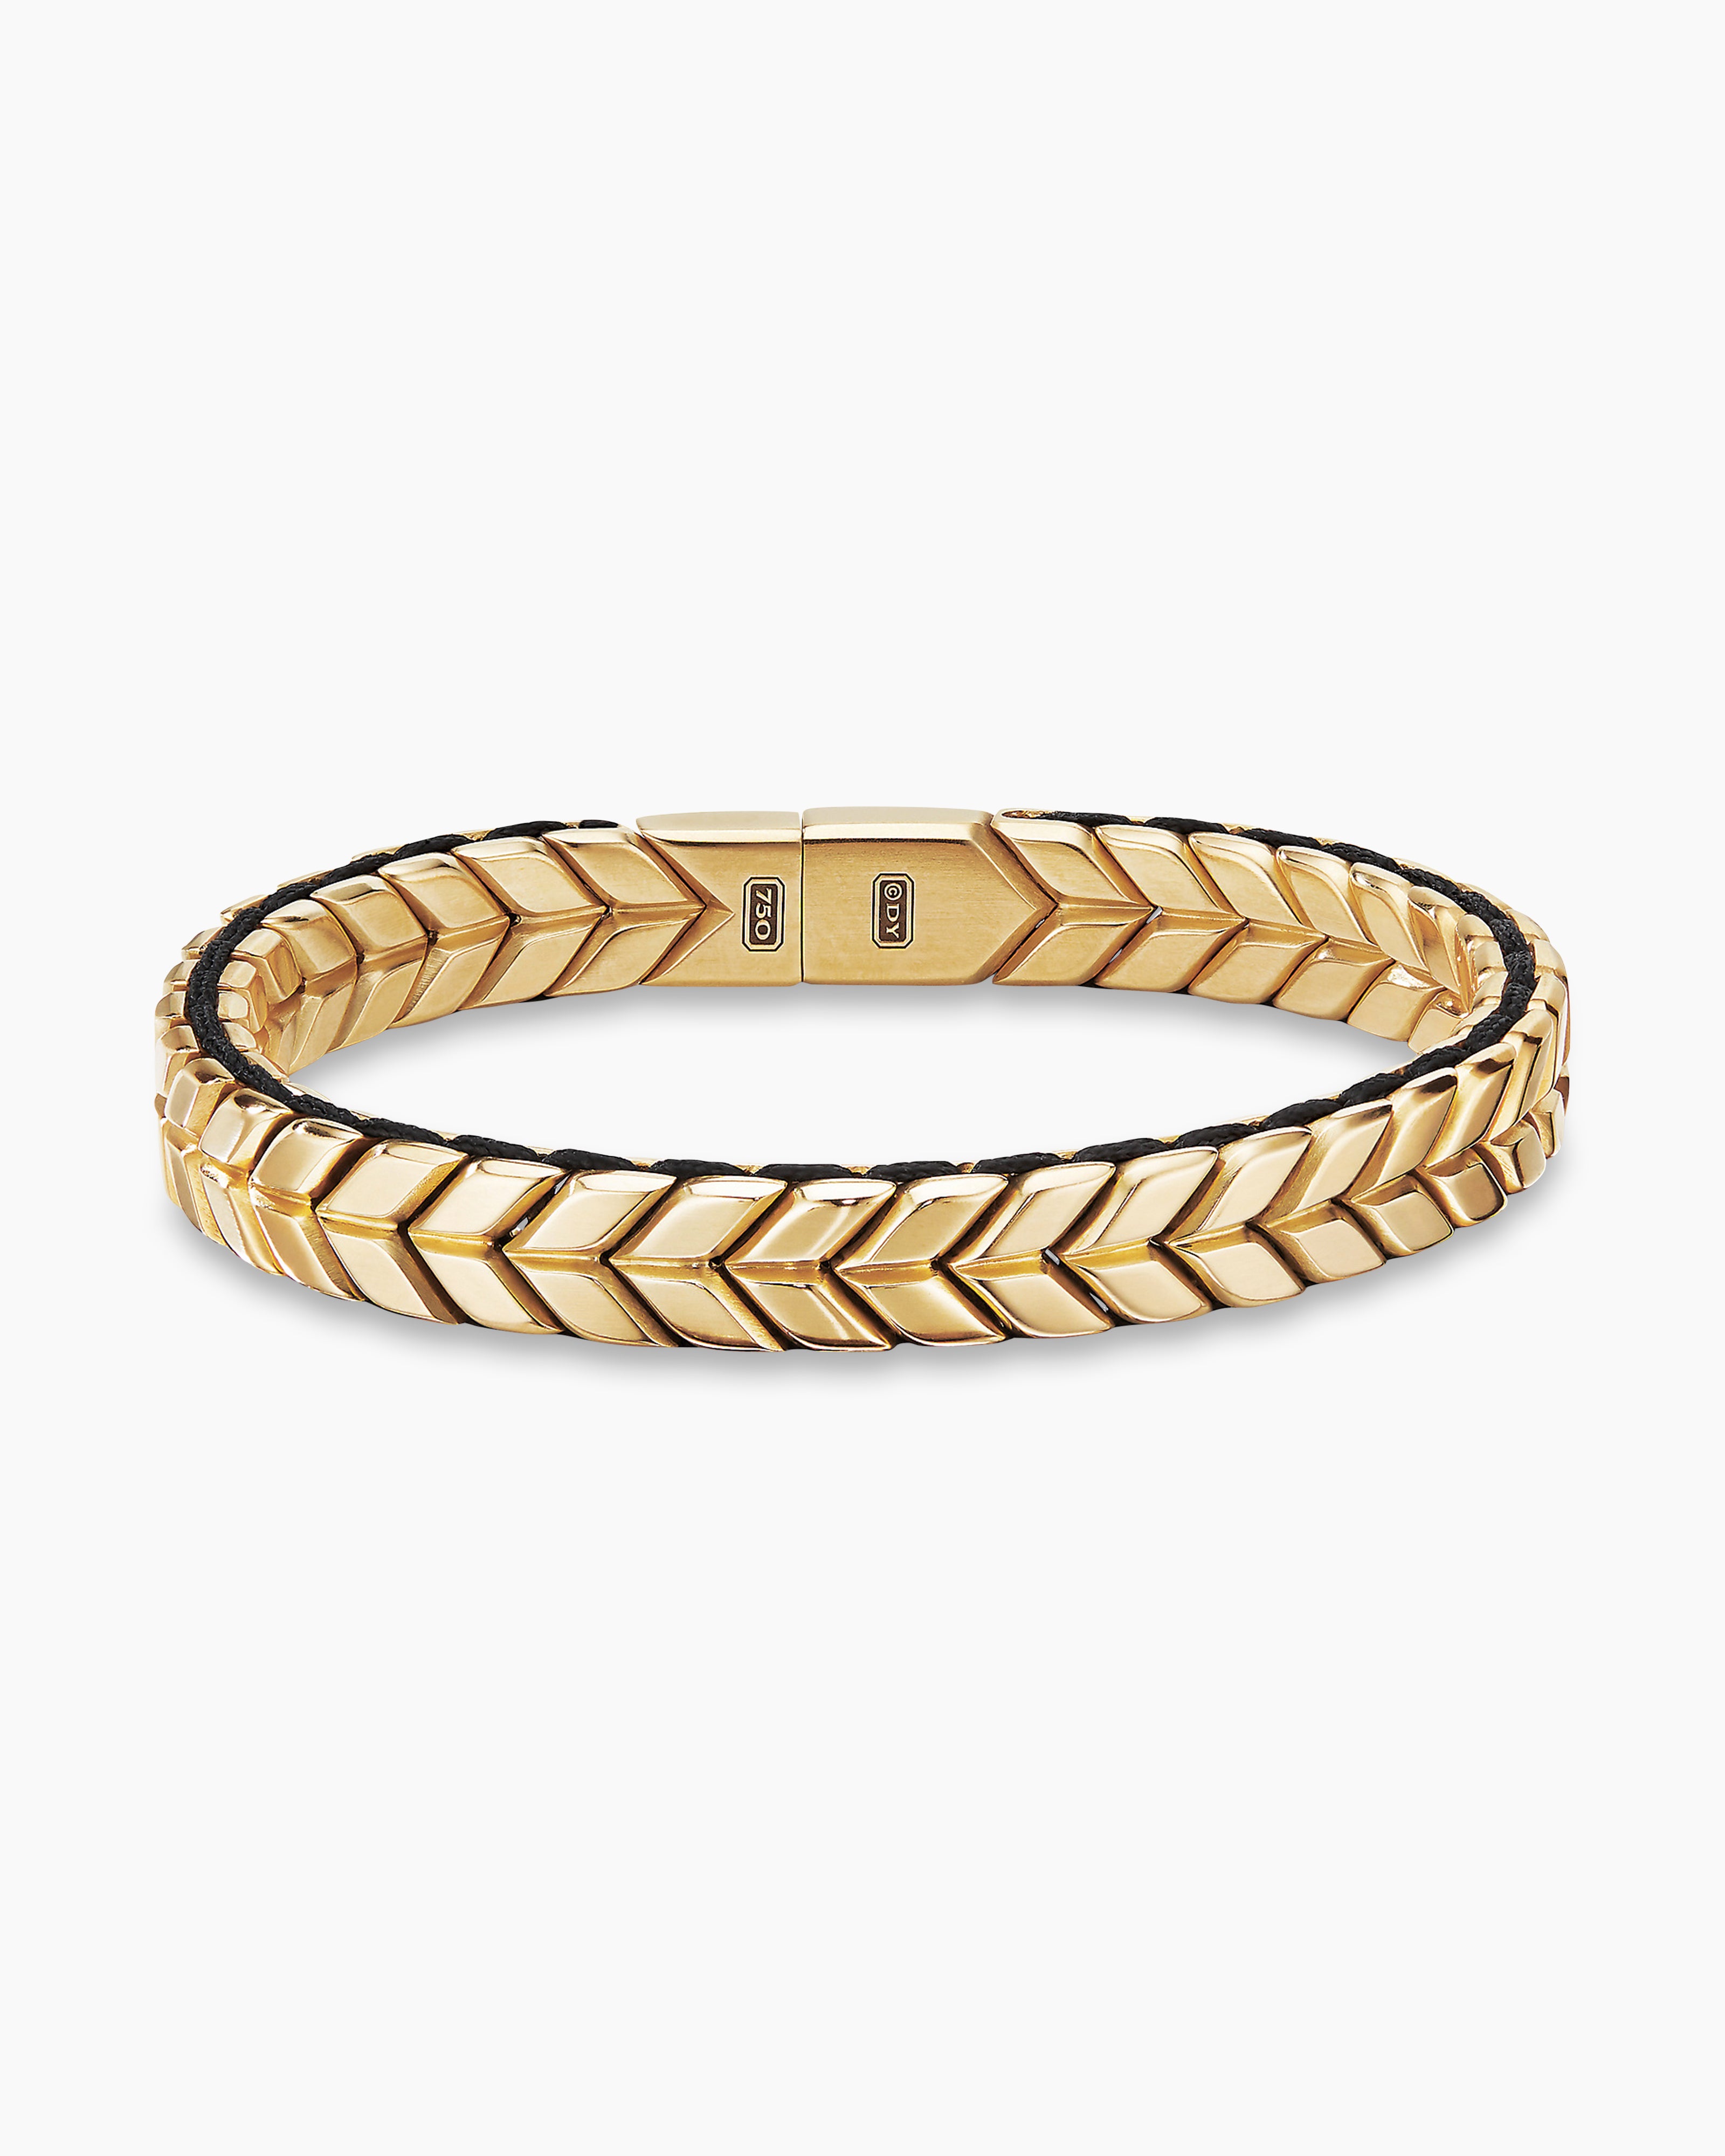 Barmakian | Phillip Gavriel Silver & 18kt Gold Woven Bracelet | Barmakian  Jewelers